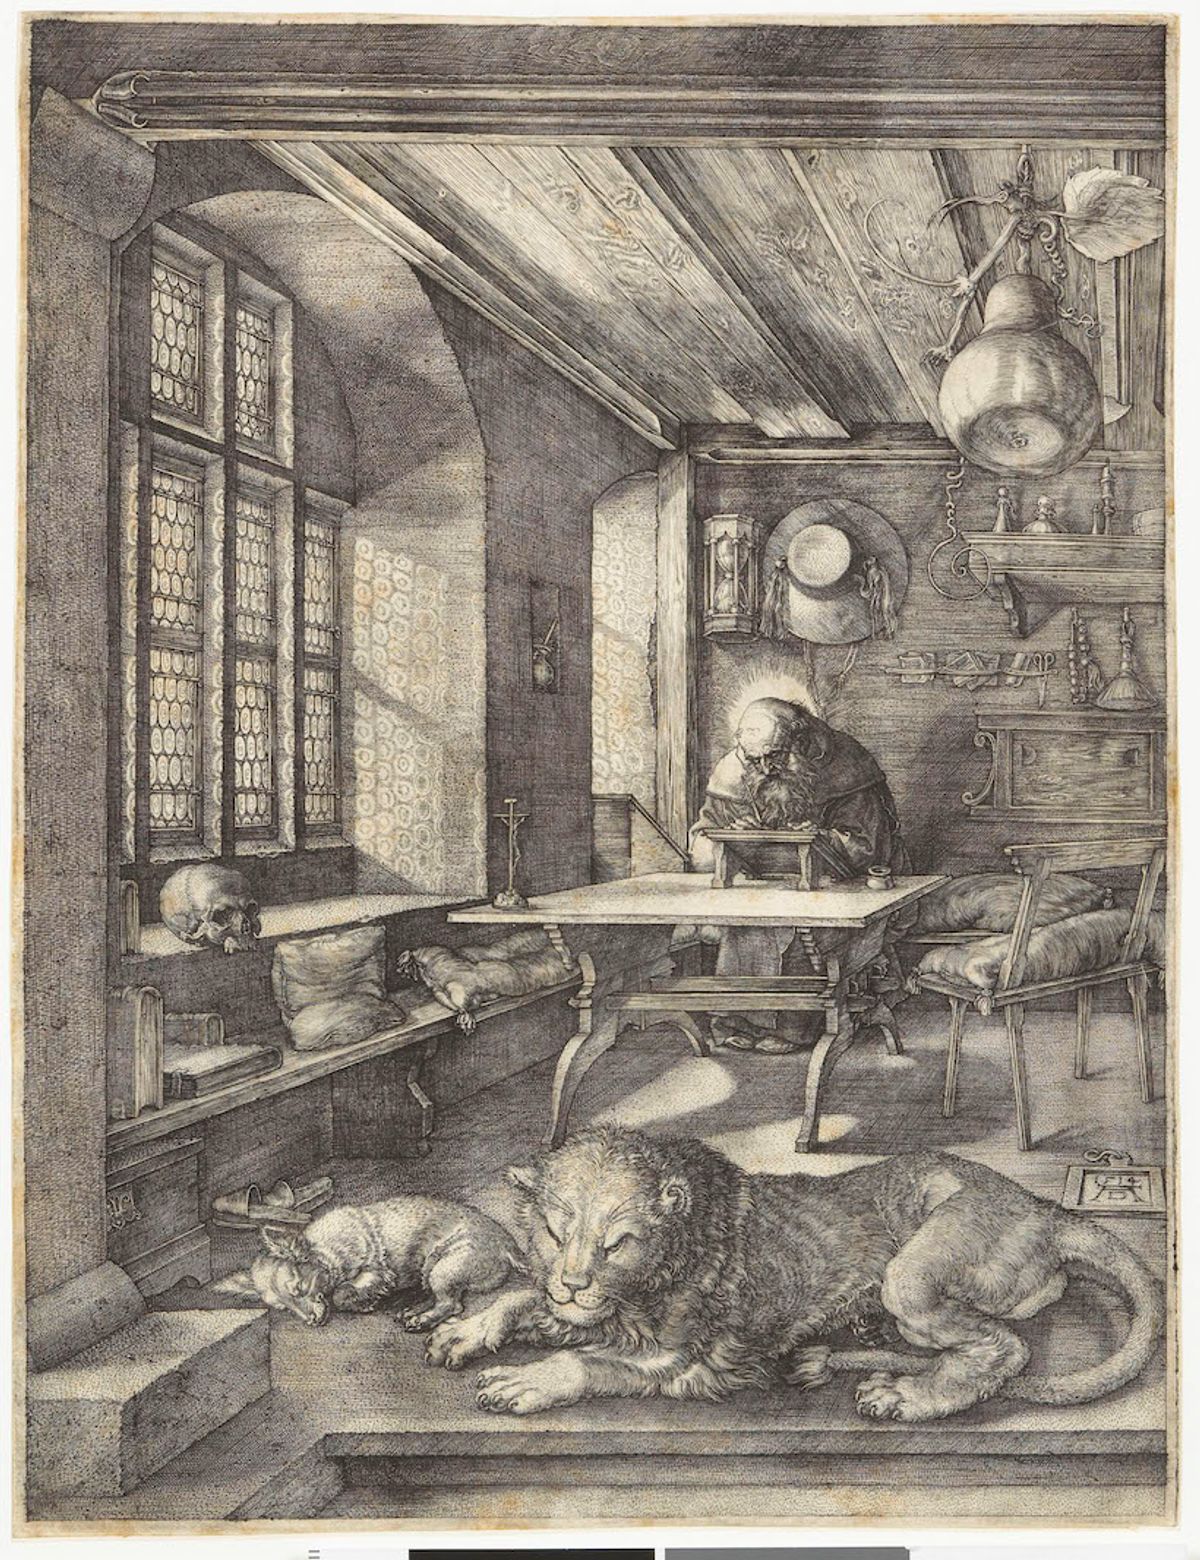 Albrecht Dürer, Saint Jérôme dans sa cellule, 1514, burin, musée Condé, EST 234